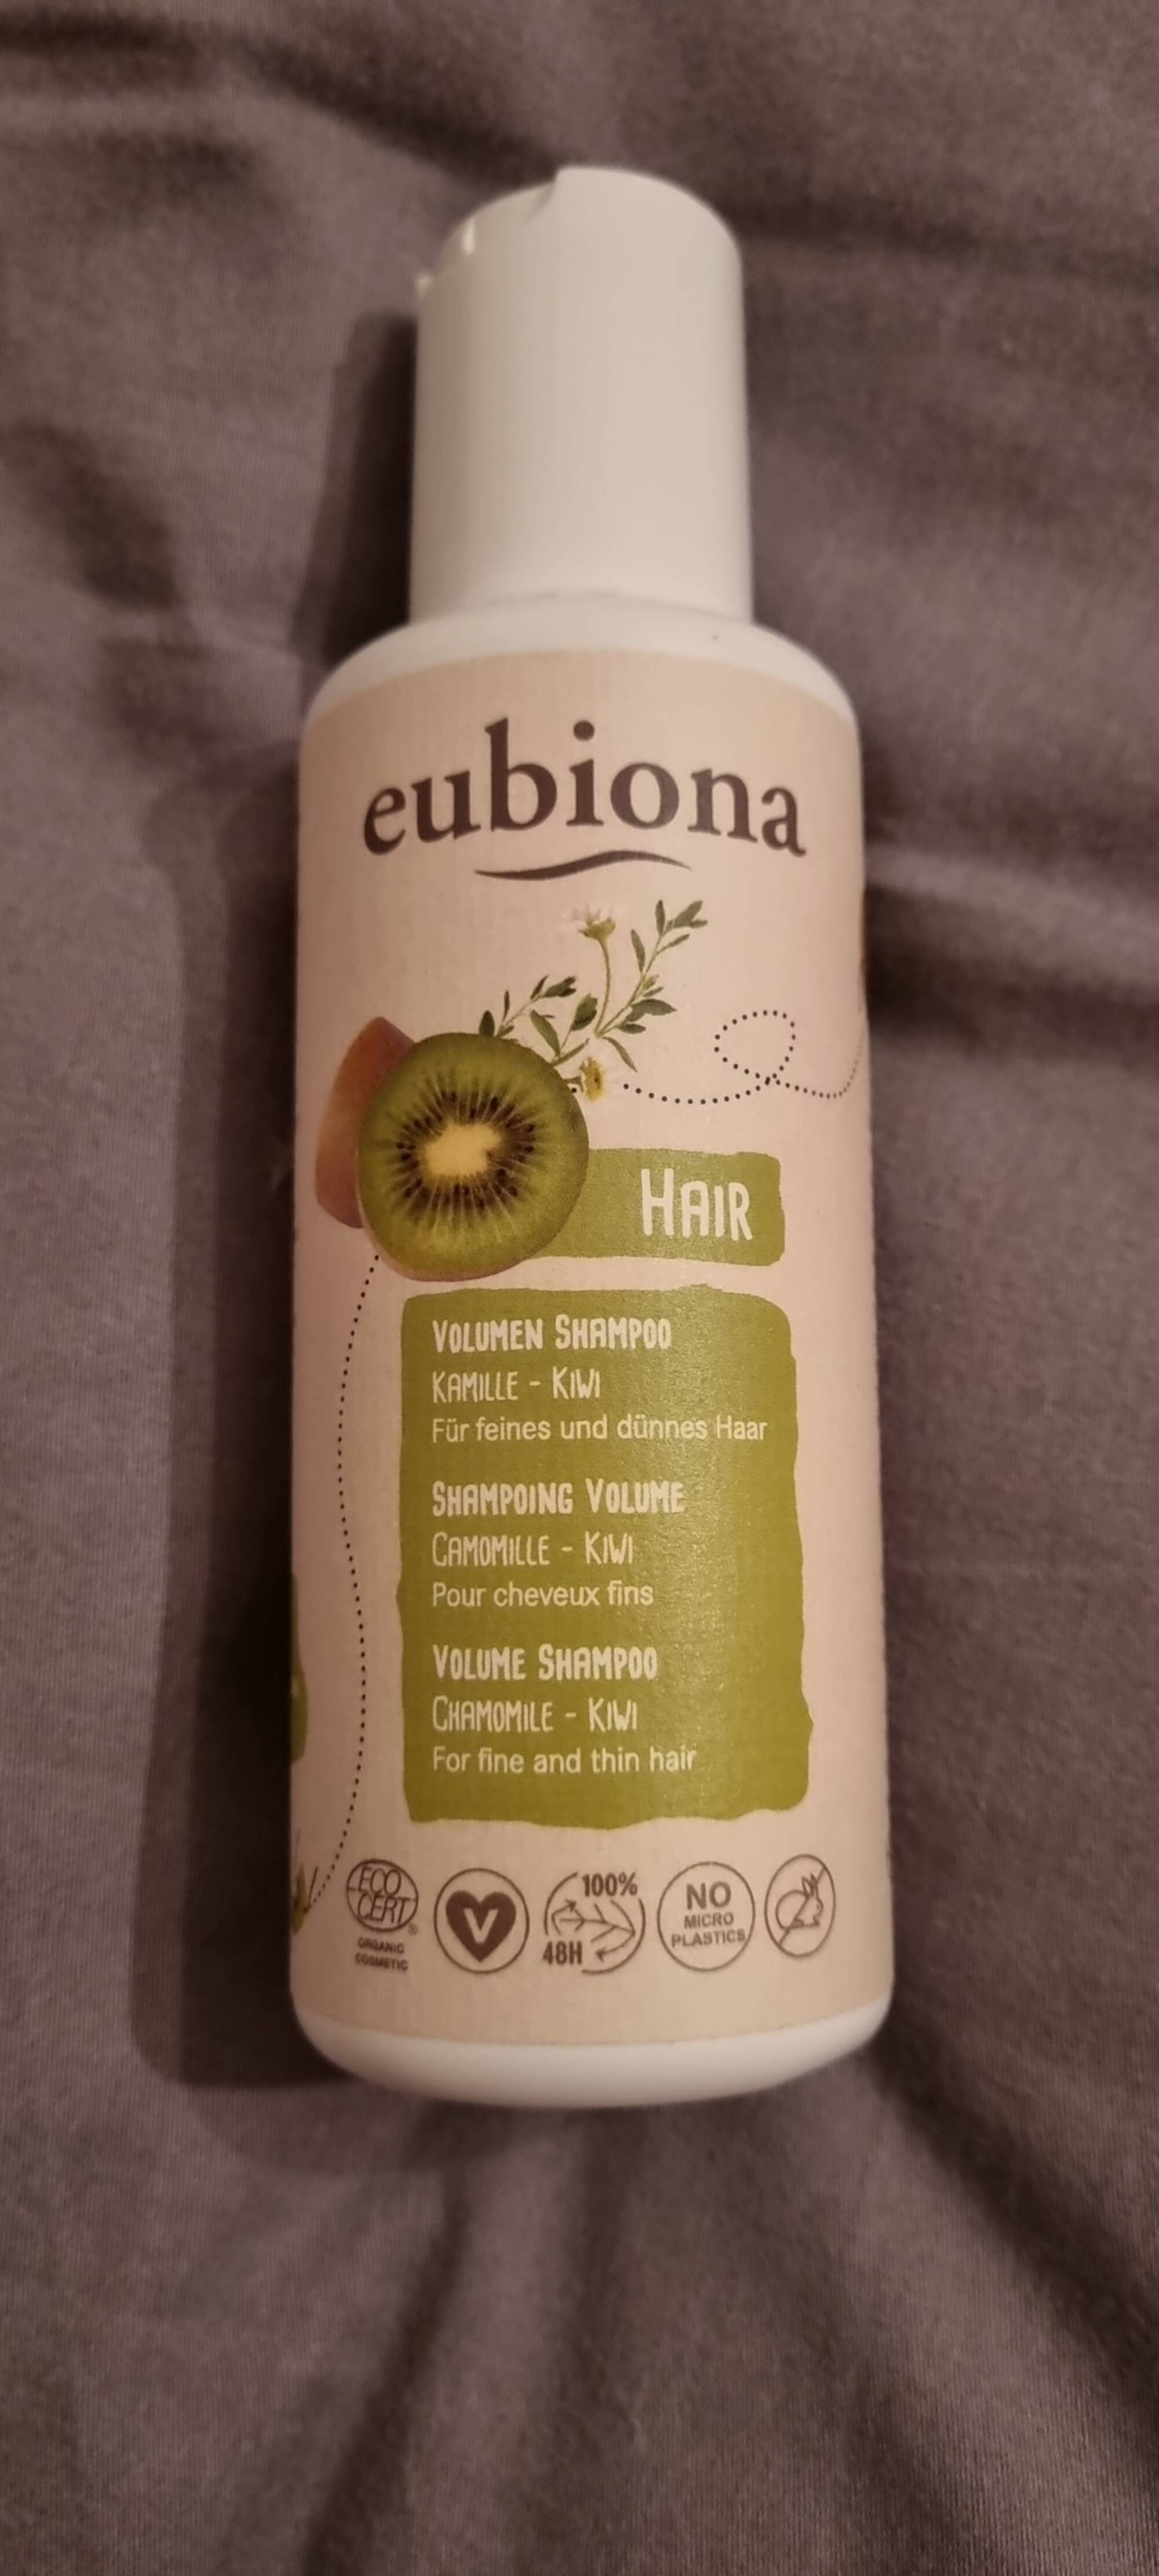 EUBIONA - Shampoing volume camomille - kiwi